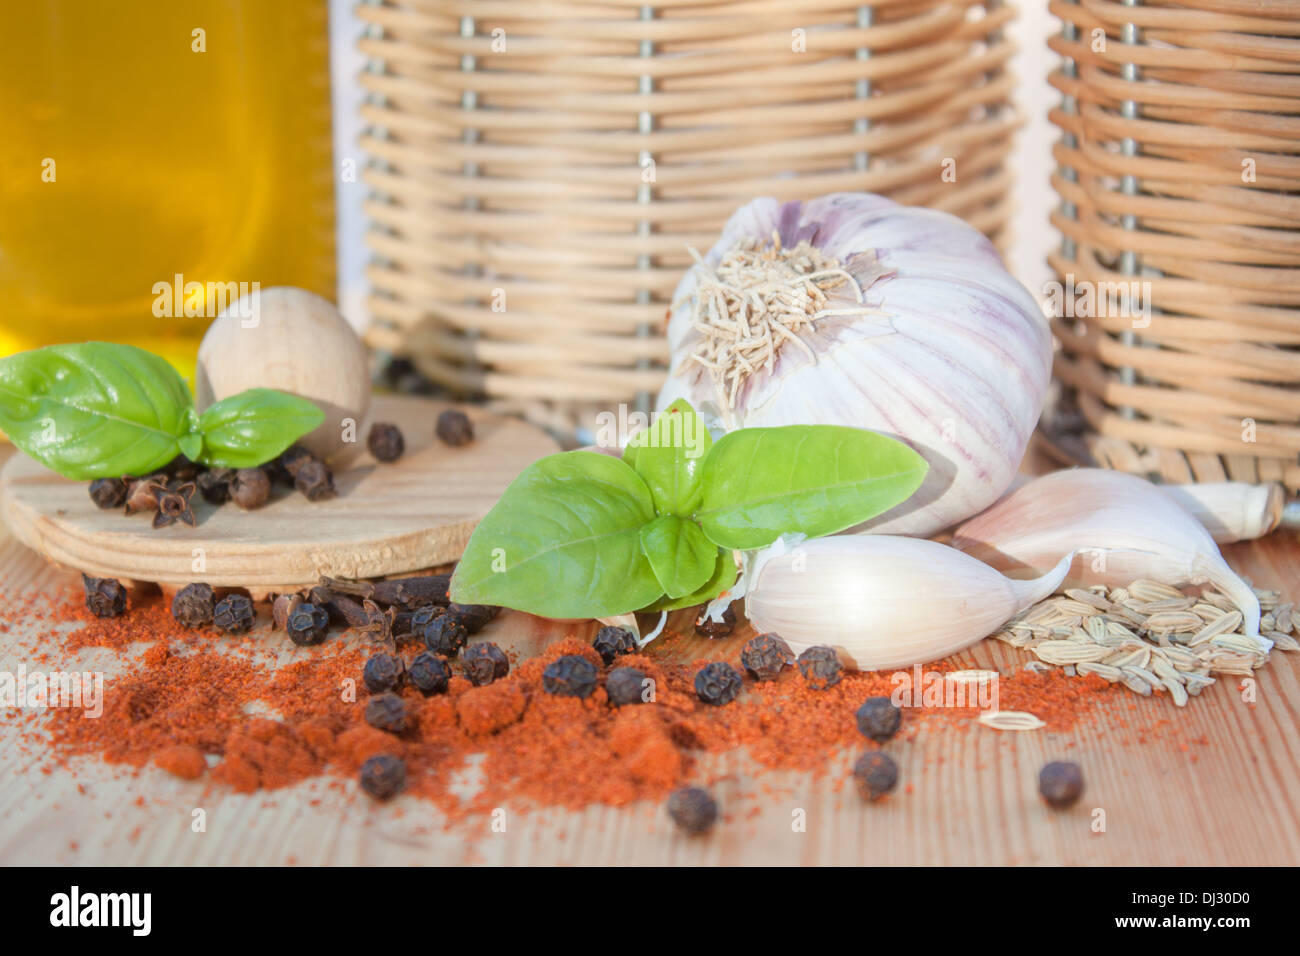 Especias, condimentos de cocina cerca de la luz de la cocina ajo pimienta albahaca "aceite de oliva" Foto de stock